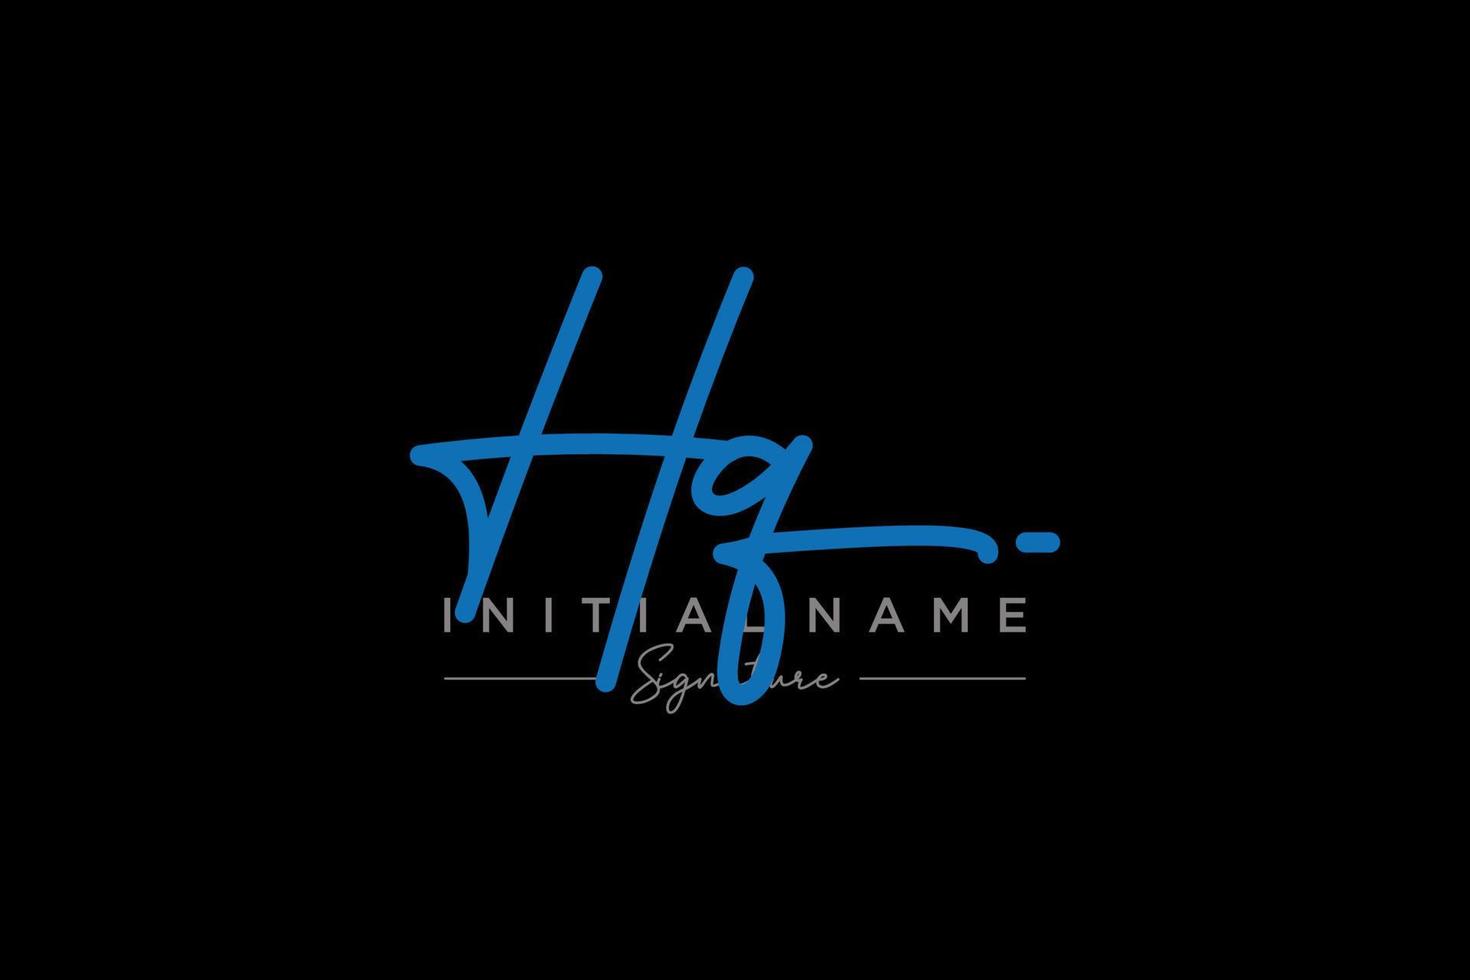 första hq signatur logotyp mall vektor. hand dragen kalligrafi text vektor illustration.